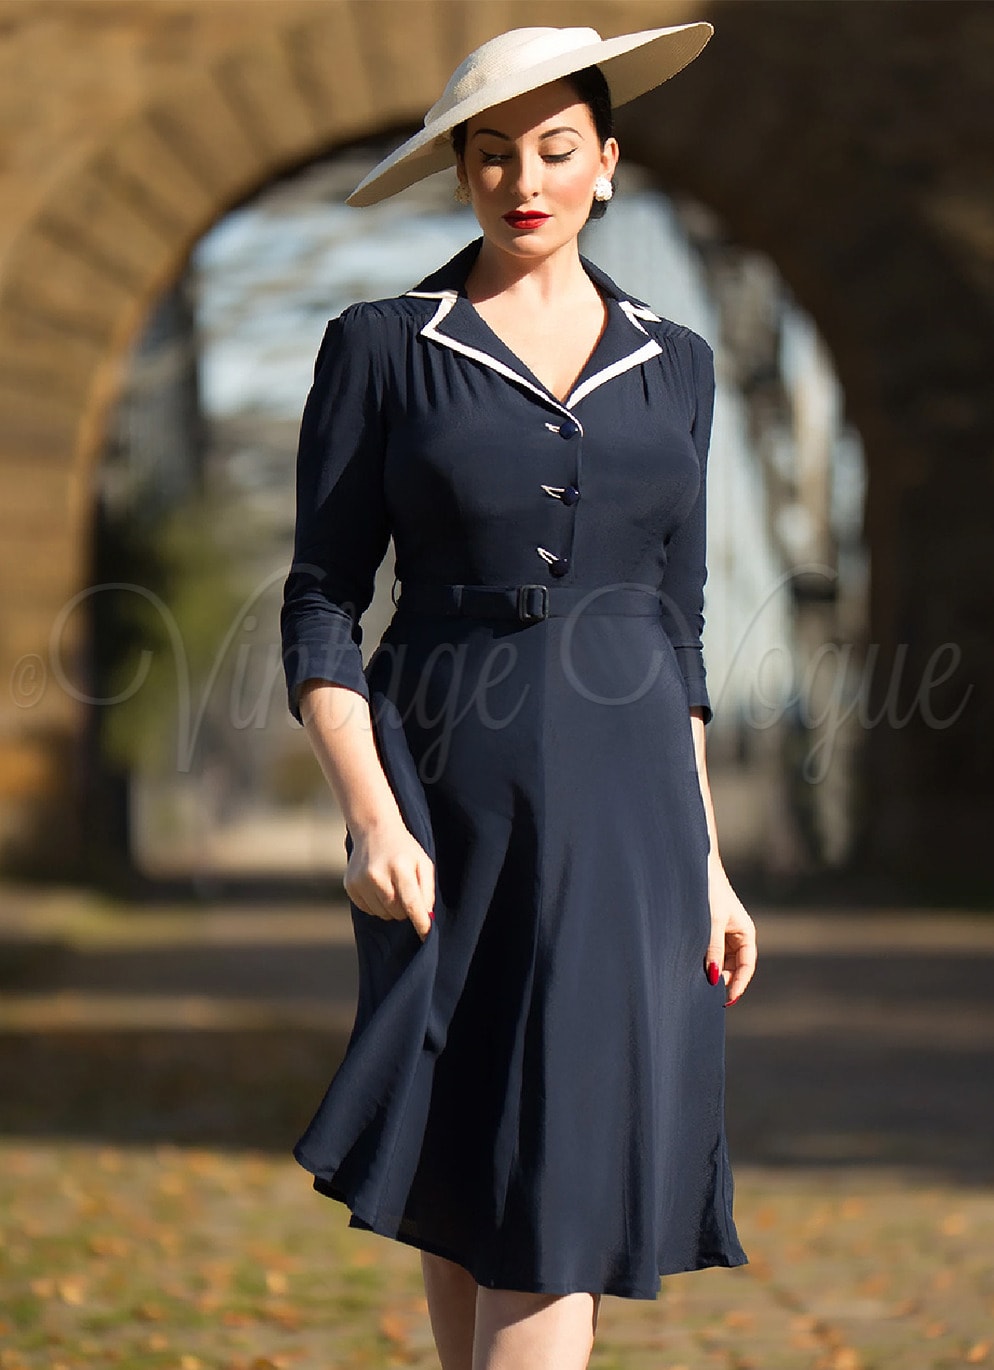 Bloomsbury 40's Vintage Retro A-Linie Kleid Lisa Mae Swing Dress in Navy Blau Dunkelblau 40er Jahre A-Linie ausgestelltes Damenkleid Elegant Stilvoll Büro Office Business